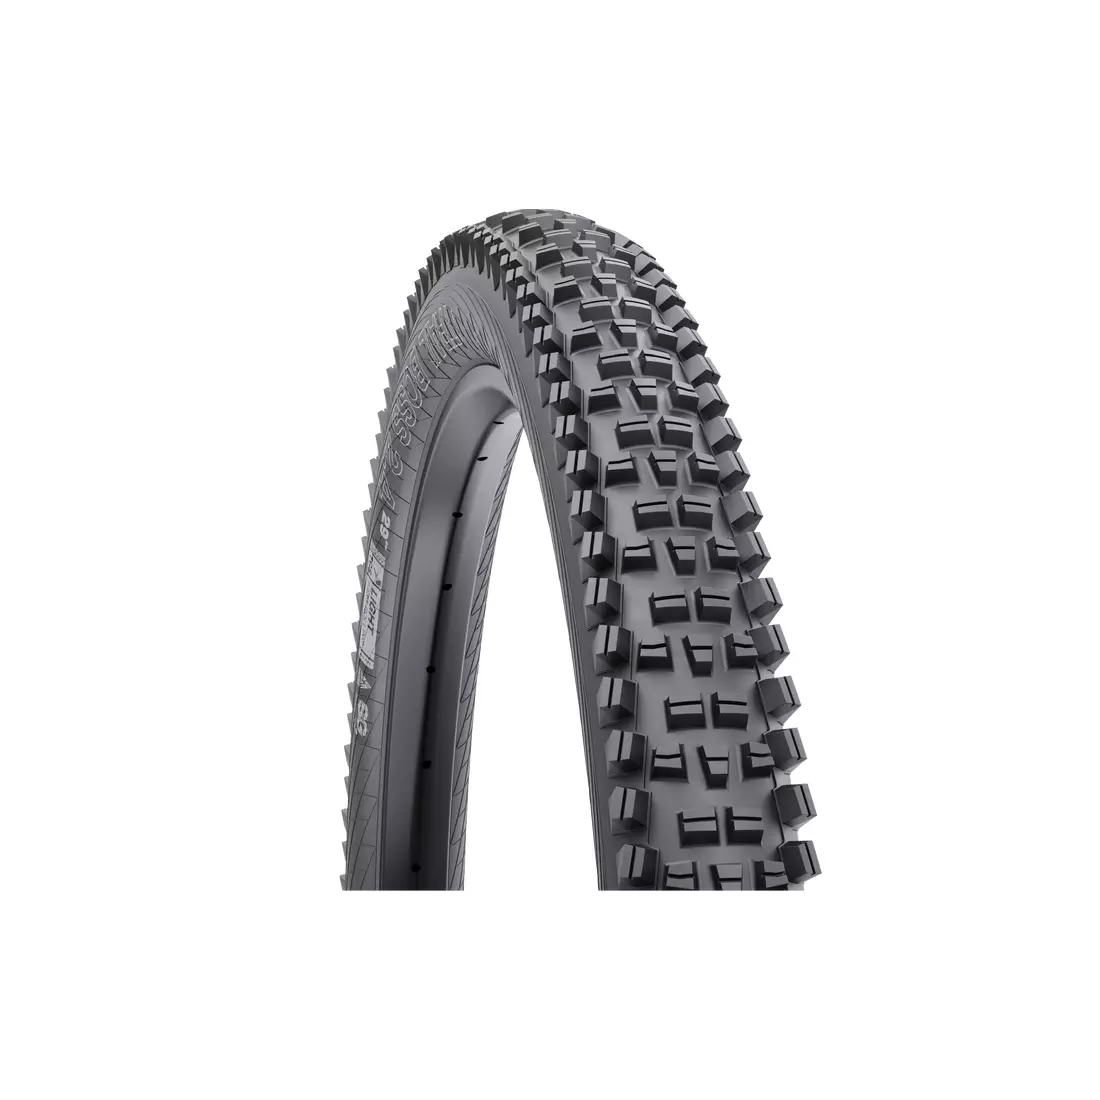 WTB TRAIL BOSS TFR 60 TPI TRITEC Bike tire 29x2,4 